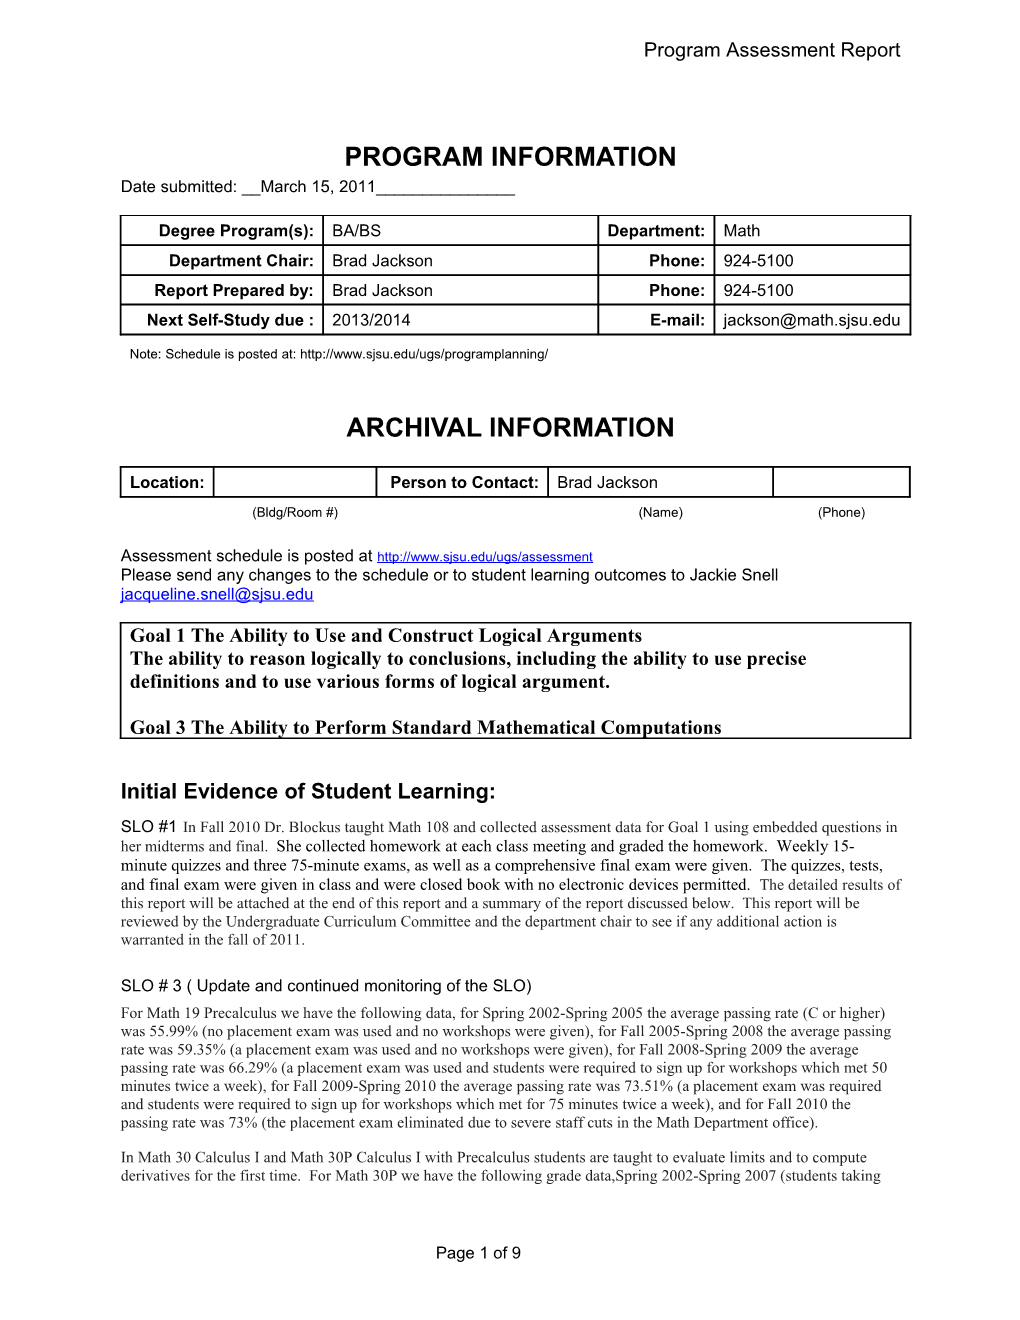 Fall 2007 Semester Program Assessment Report - ALTERNATE